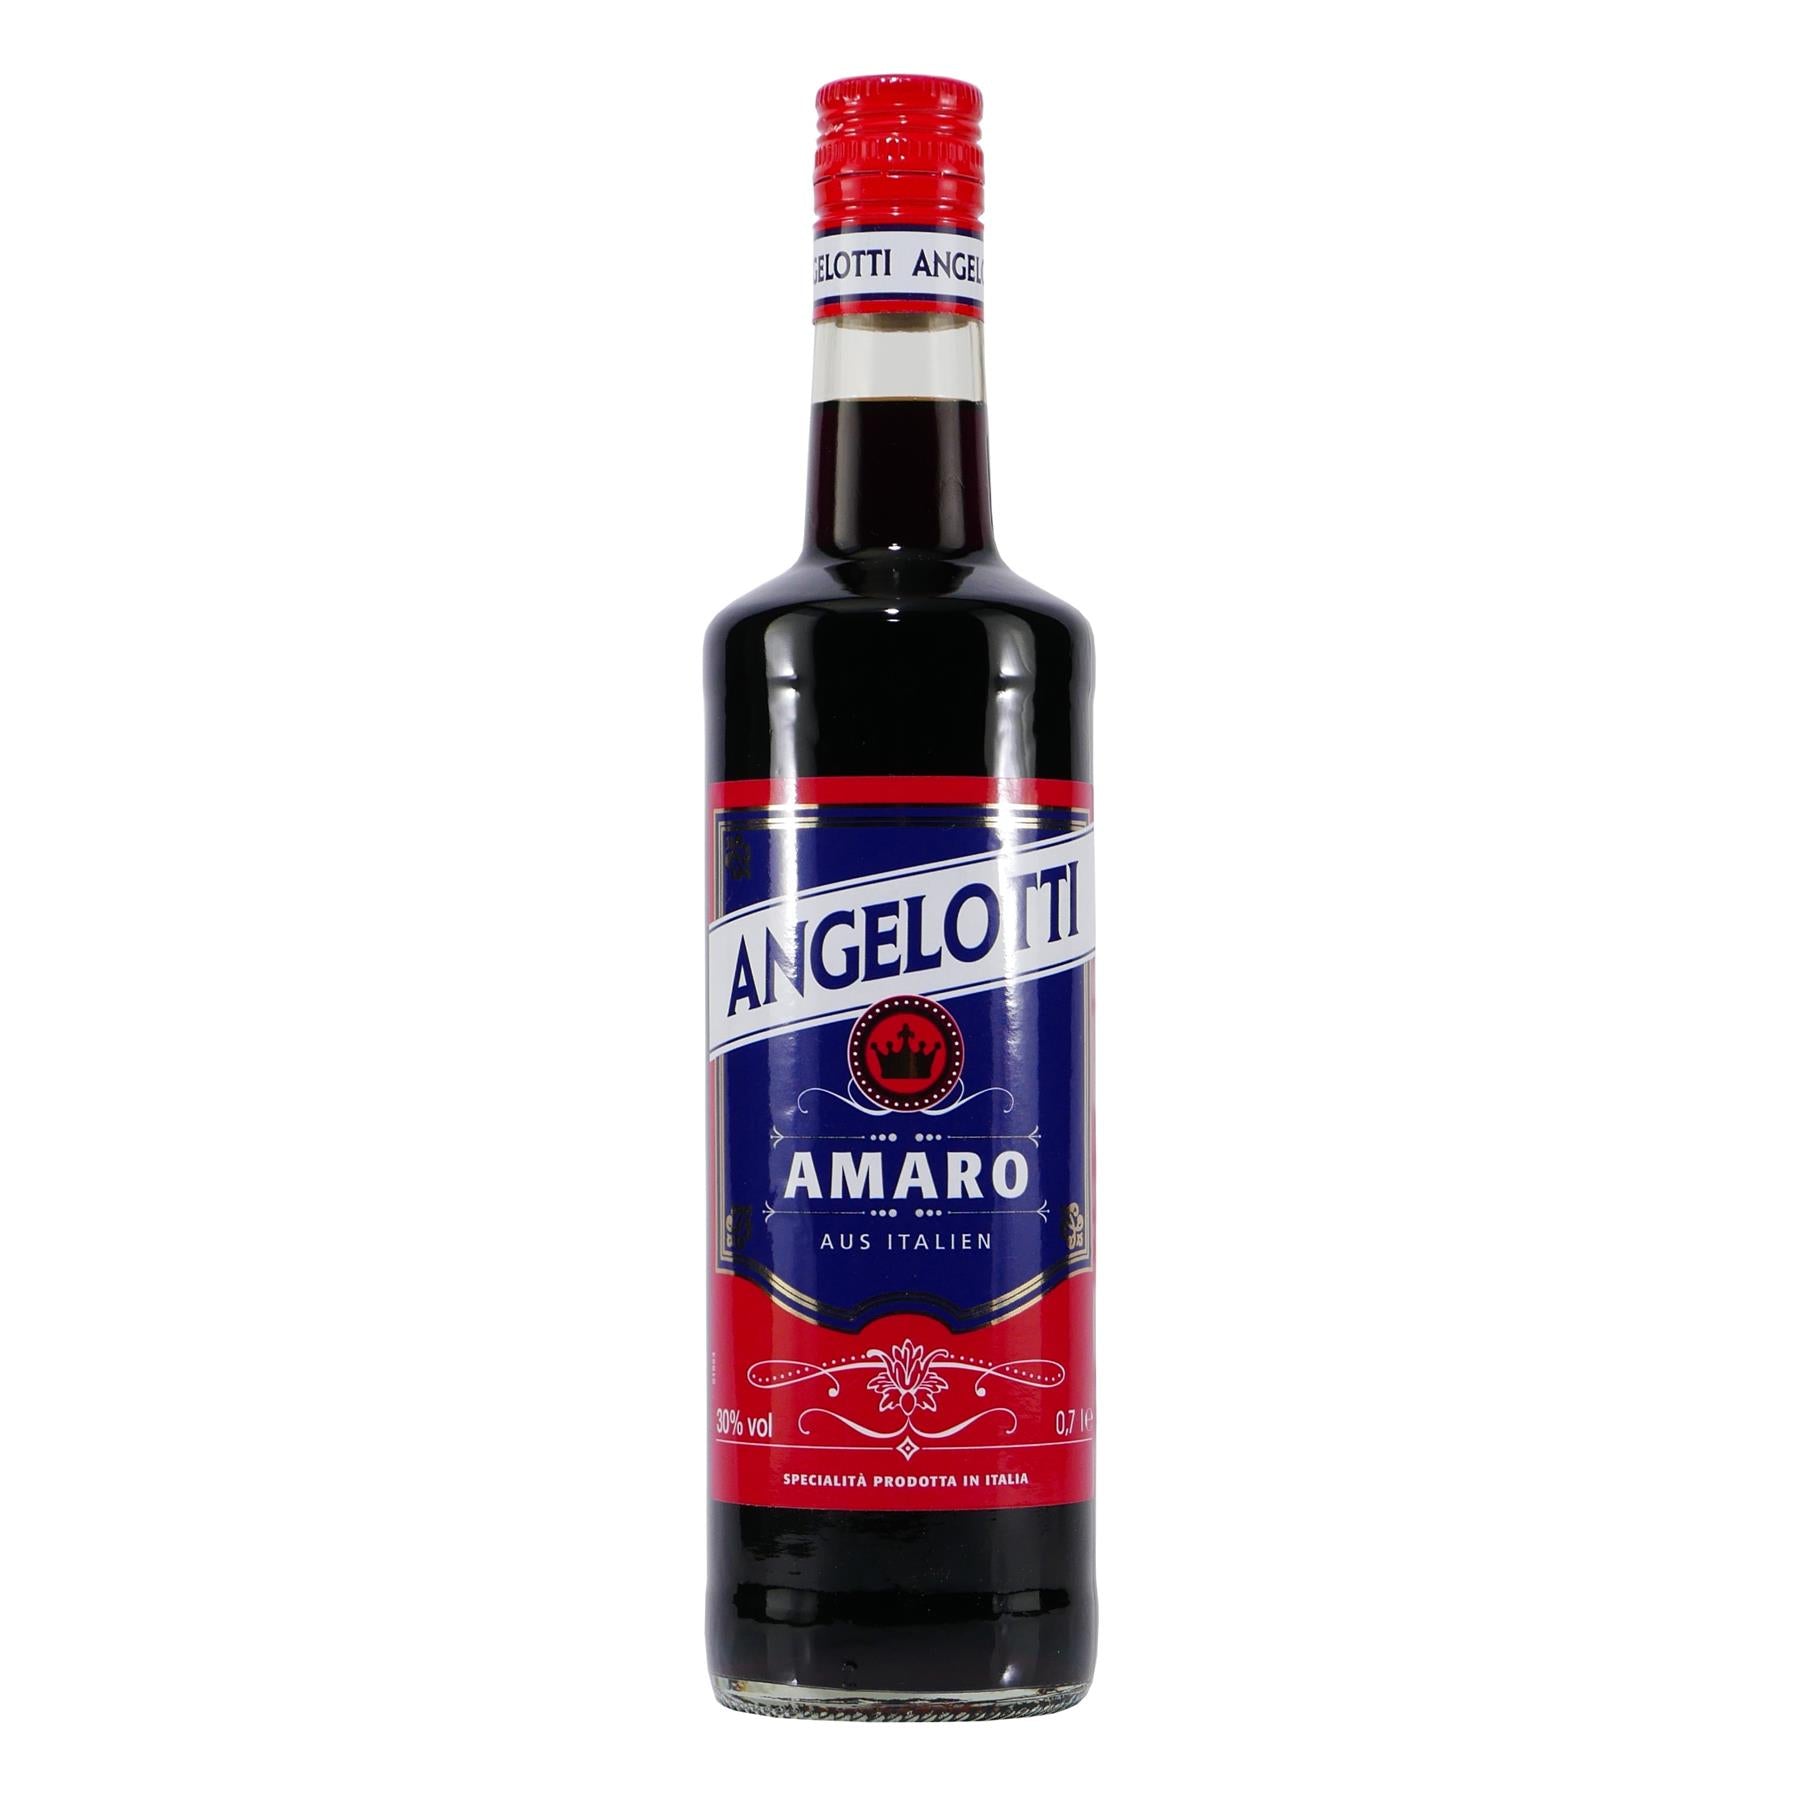 Angelotti Amaro Kräuter-Likör